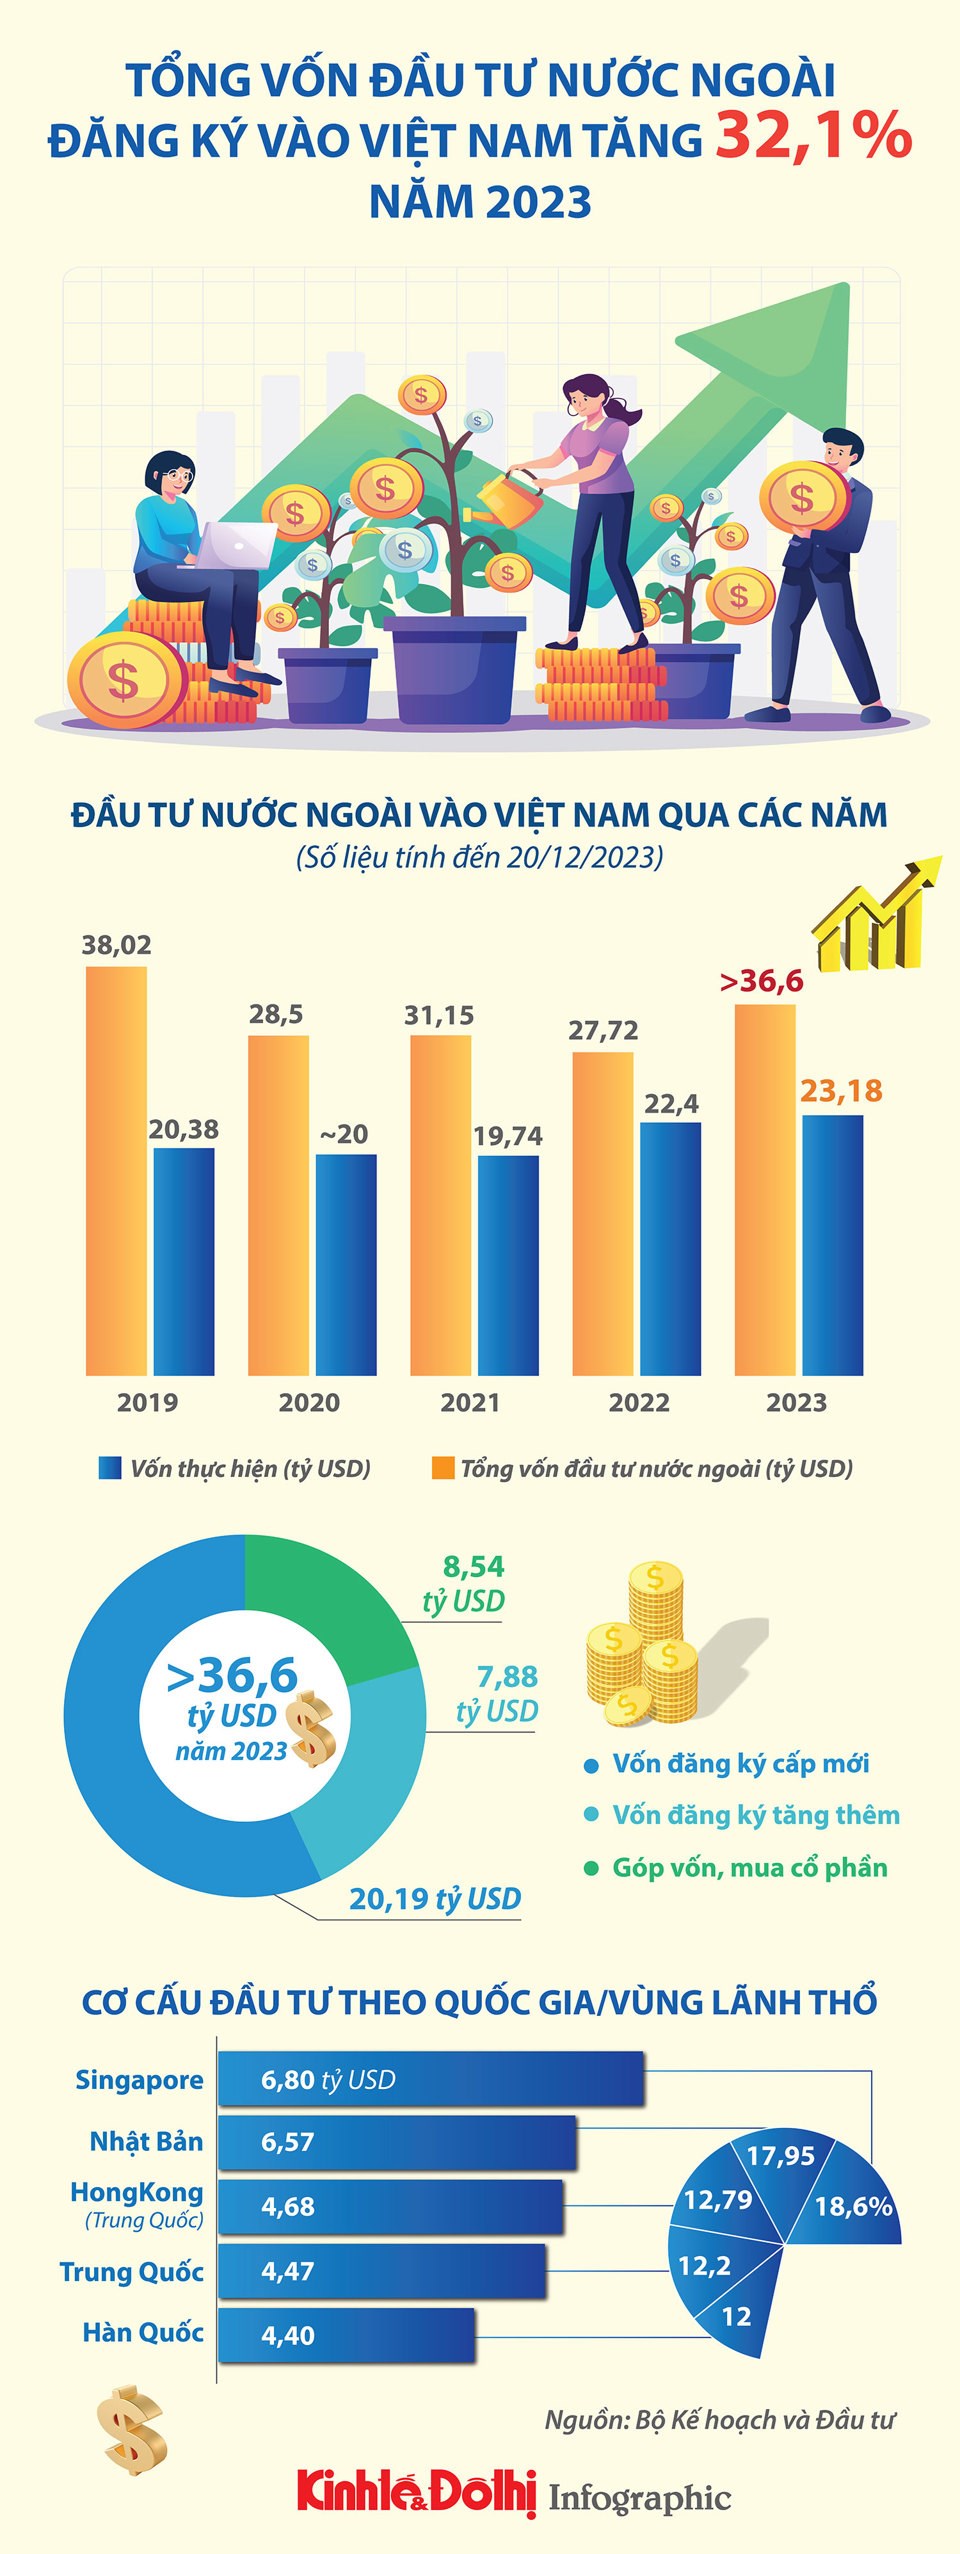 FDI vào Việt Nam tăng mạnh trong năm 2023 - Ảnh 1